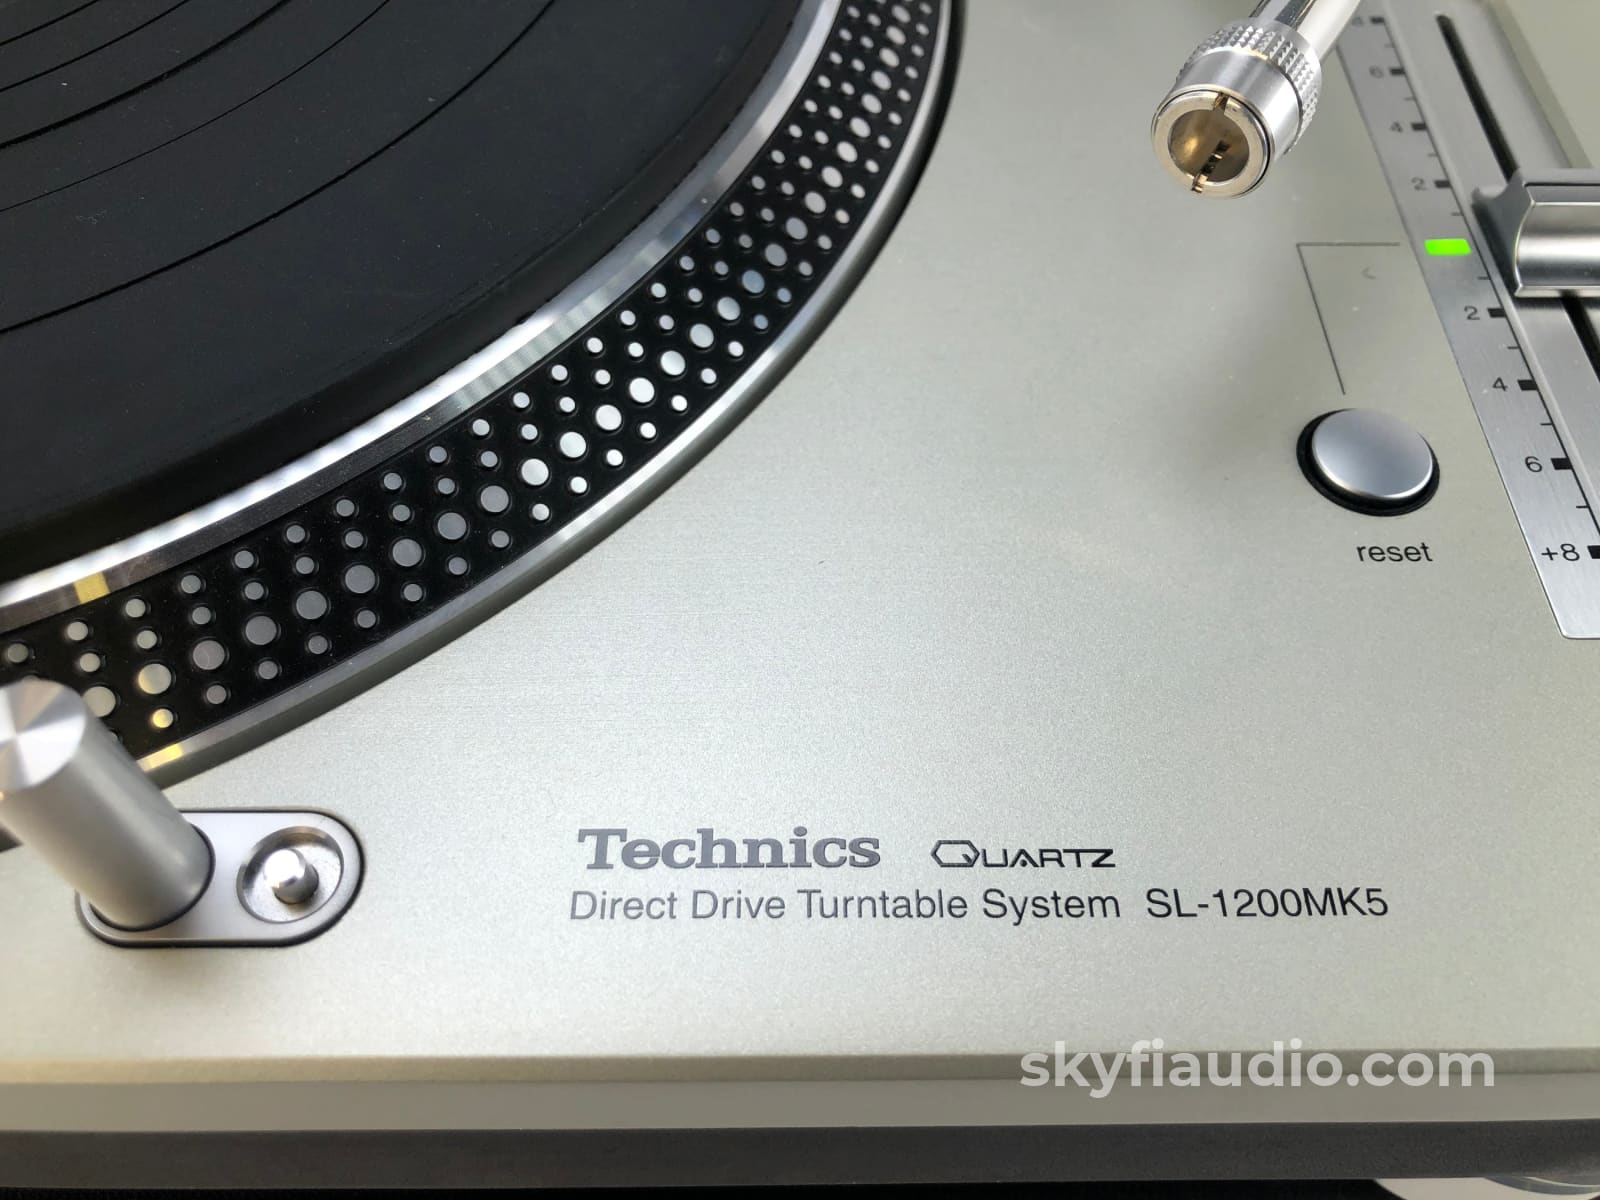 【お得本物保証】K0505-18 Technics テクニクス SL-1200 MK3D ダイレクト ドライブ ターンテーブル Direct Drive Turntable 音響機器 ターンテーブル